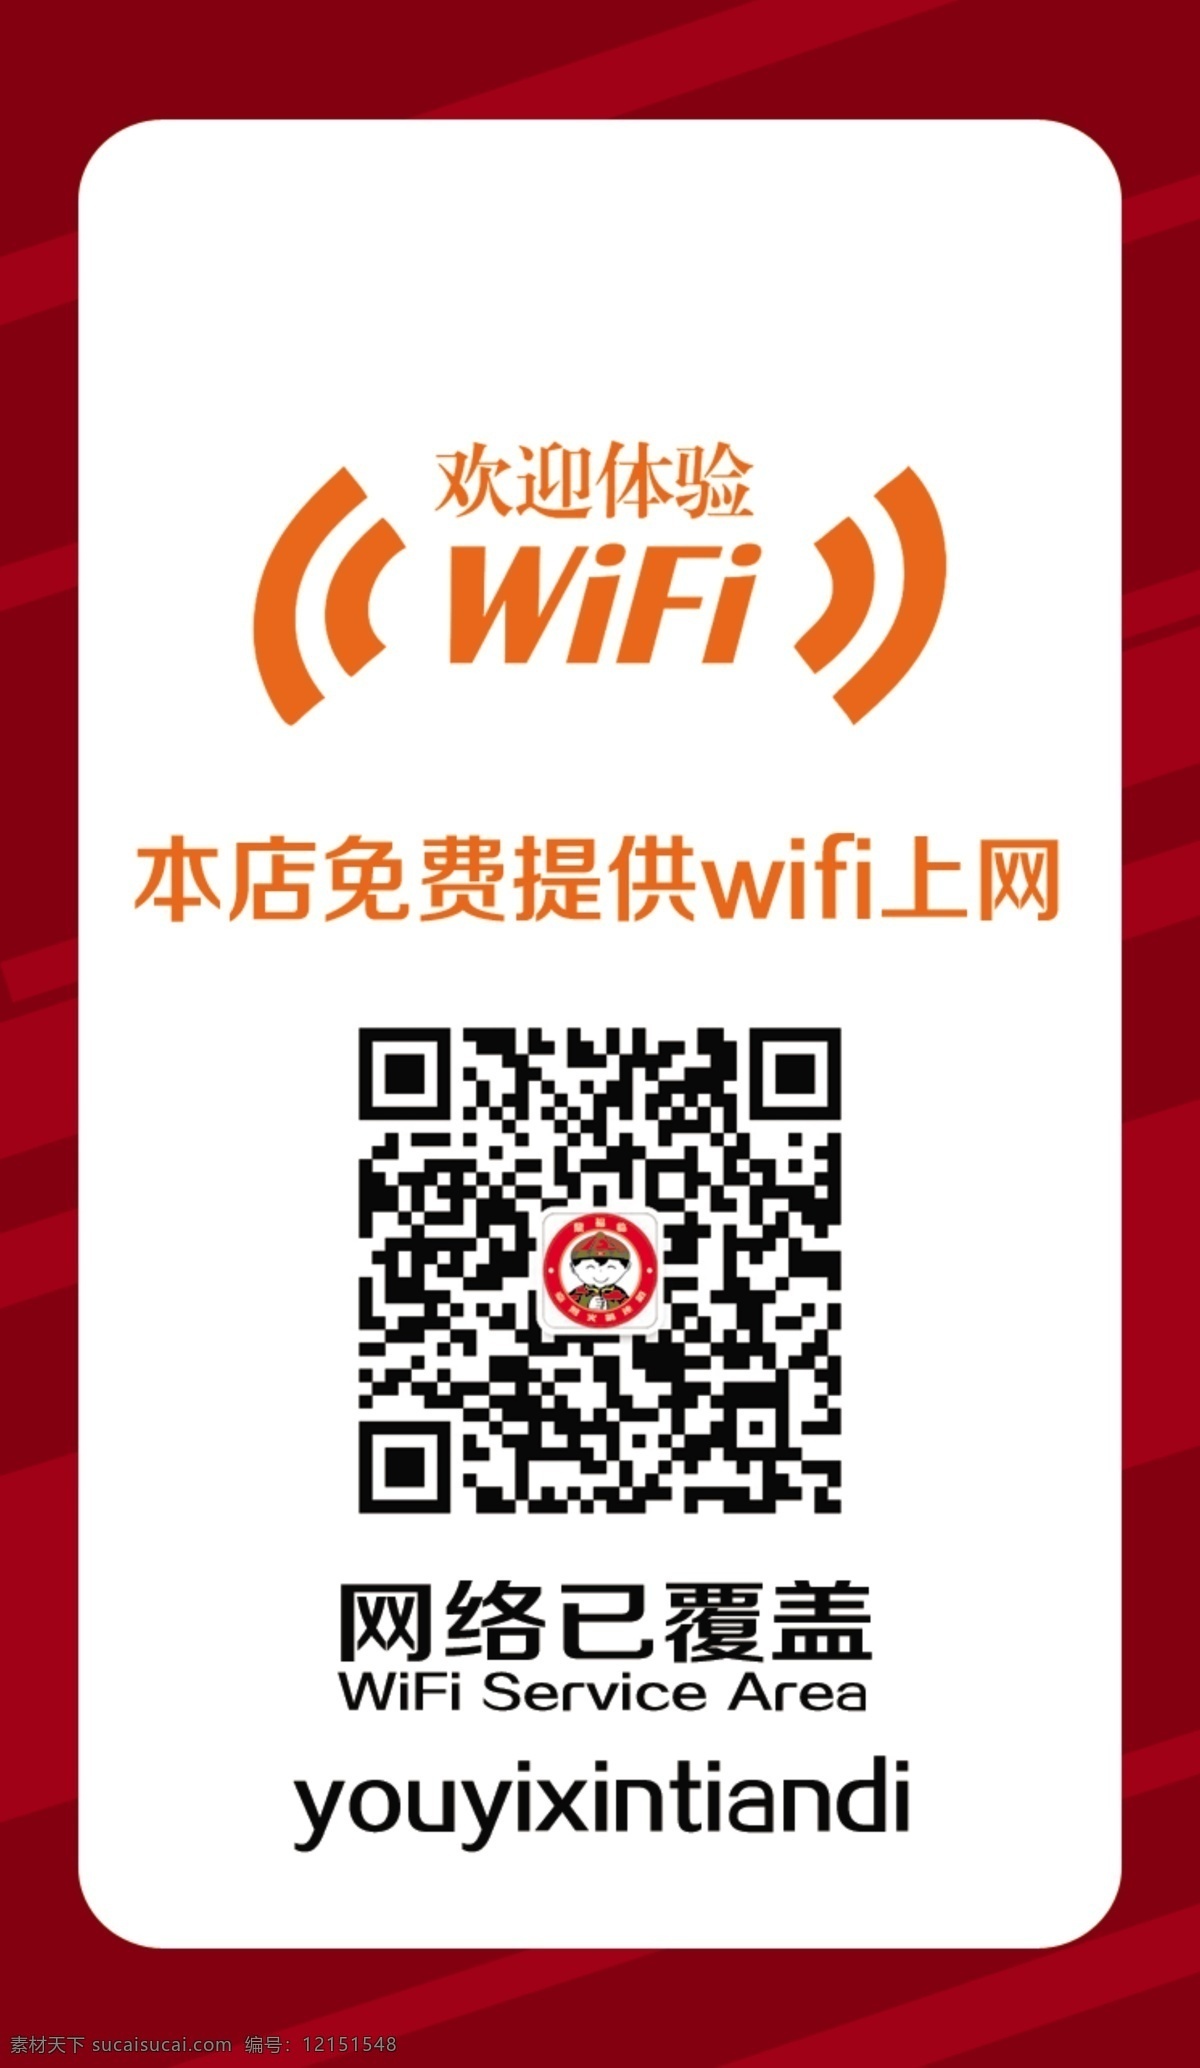 分层 wifi 二维码 免费wifi 信号 wifi贴 网络已覆盖 pthot 节日 源文件 矢量图 现代科技